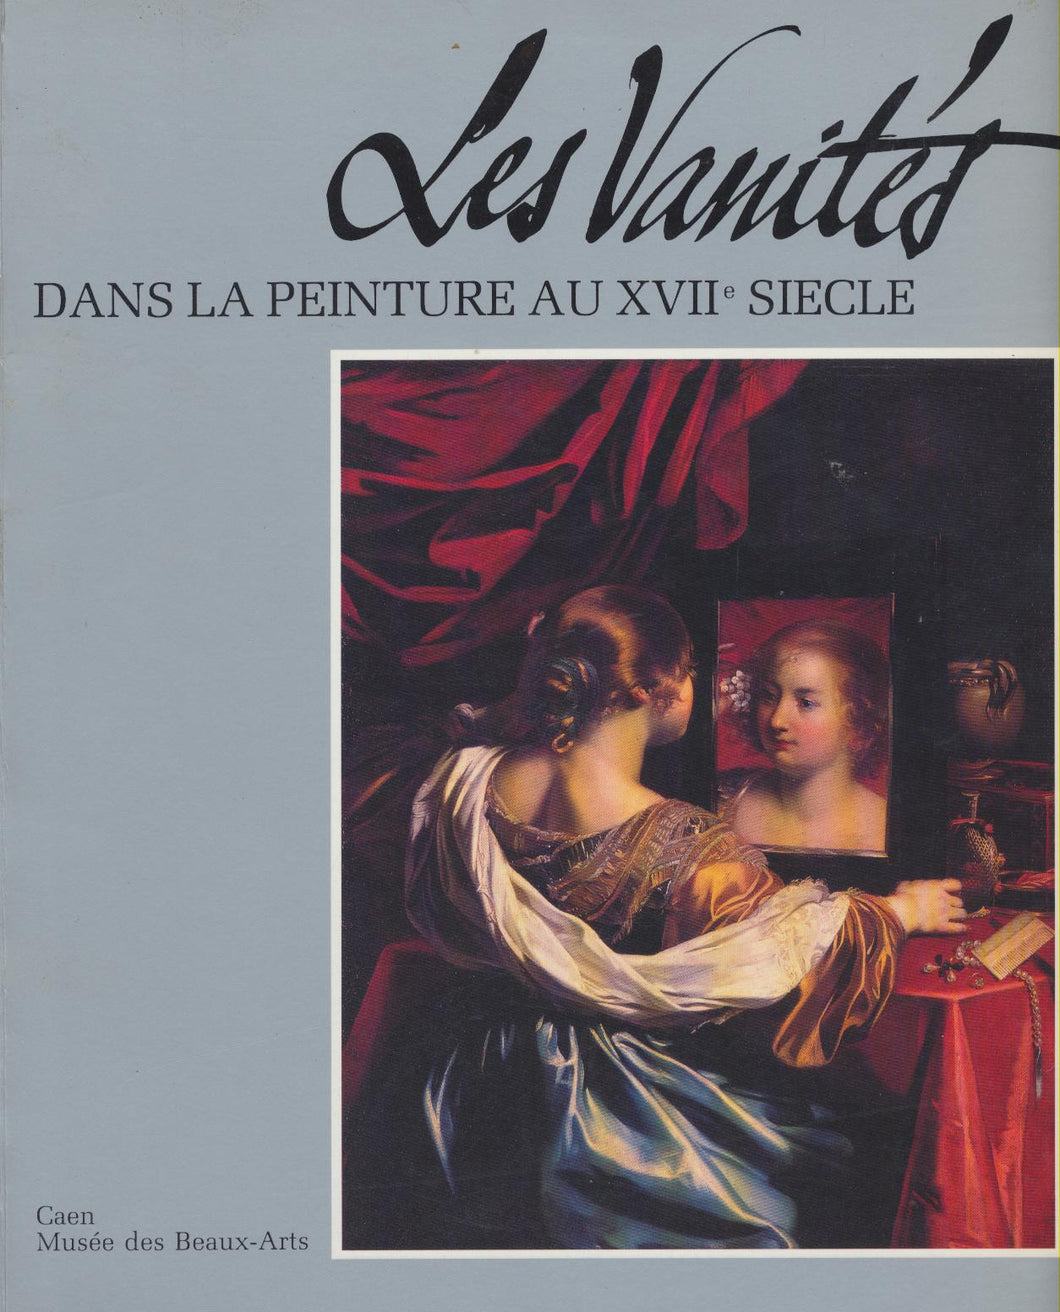 “Les Vanités” Dans la peinture au XVIIe siècle